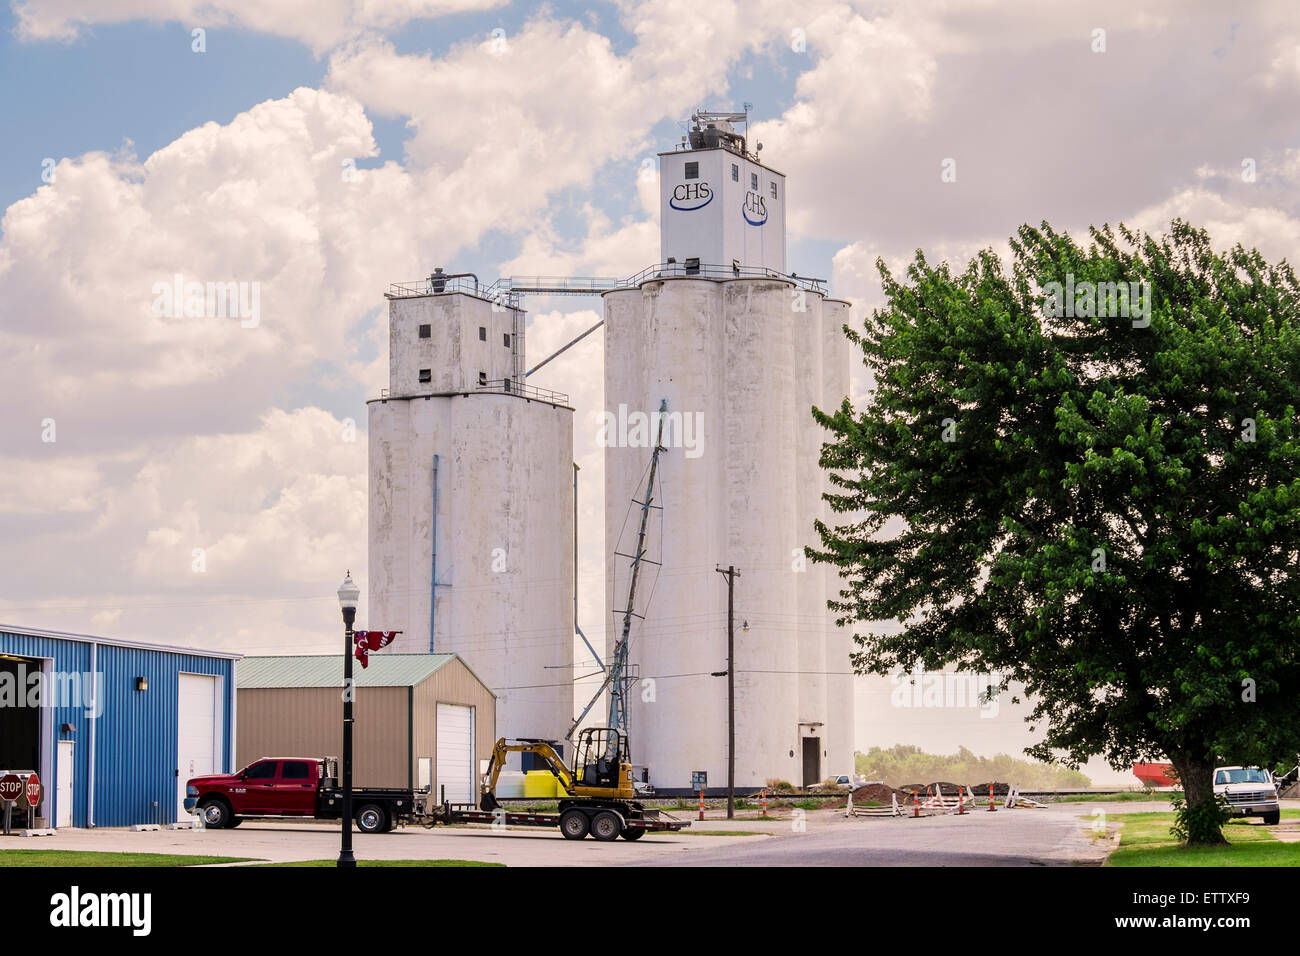 Grain elevators in the rural town of Okarche, Oklahoma, USA. Stock Photo